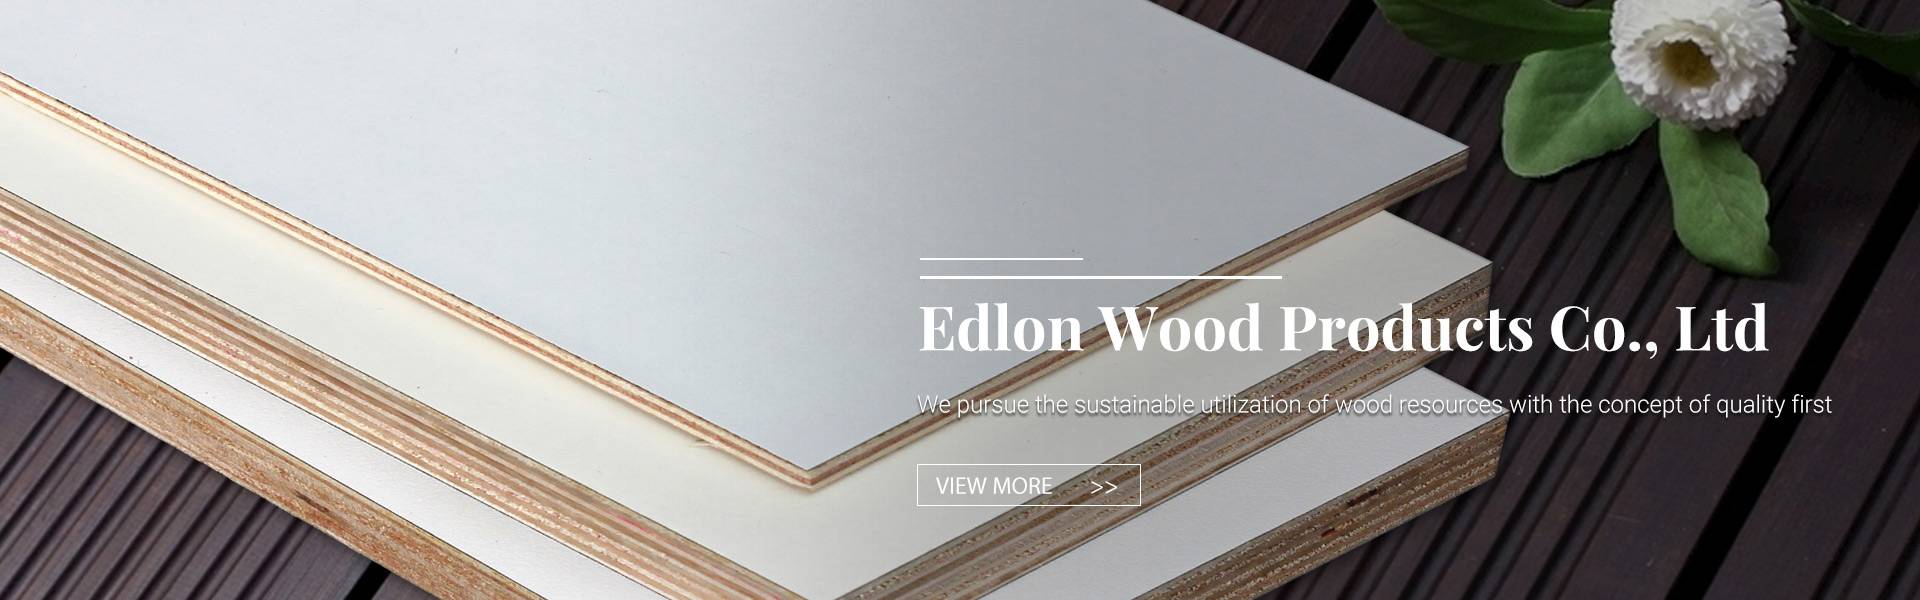 Cynhyrchion Wood Edlon Co, Ltd.